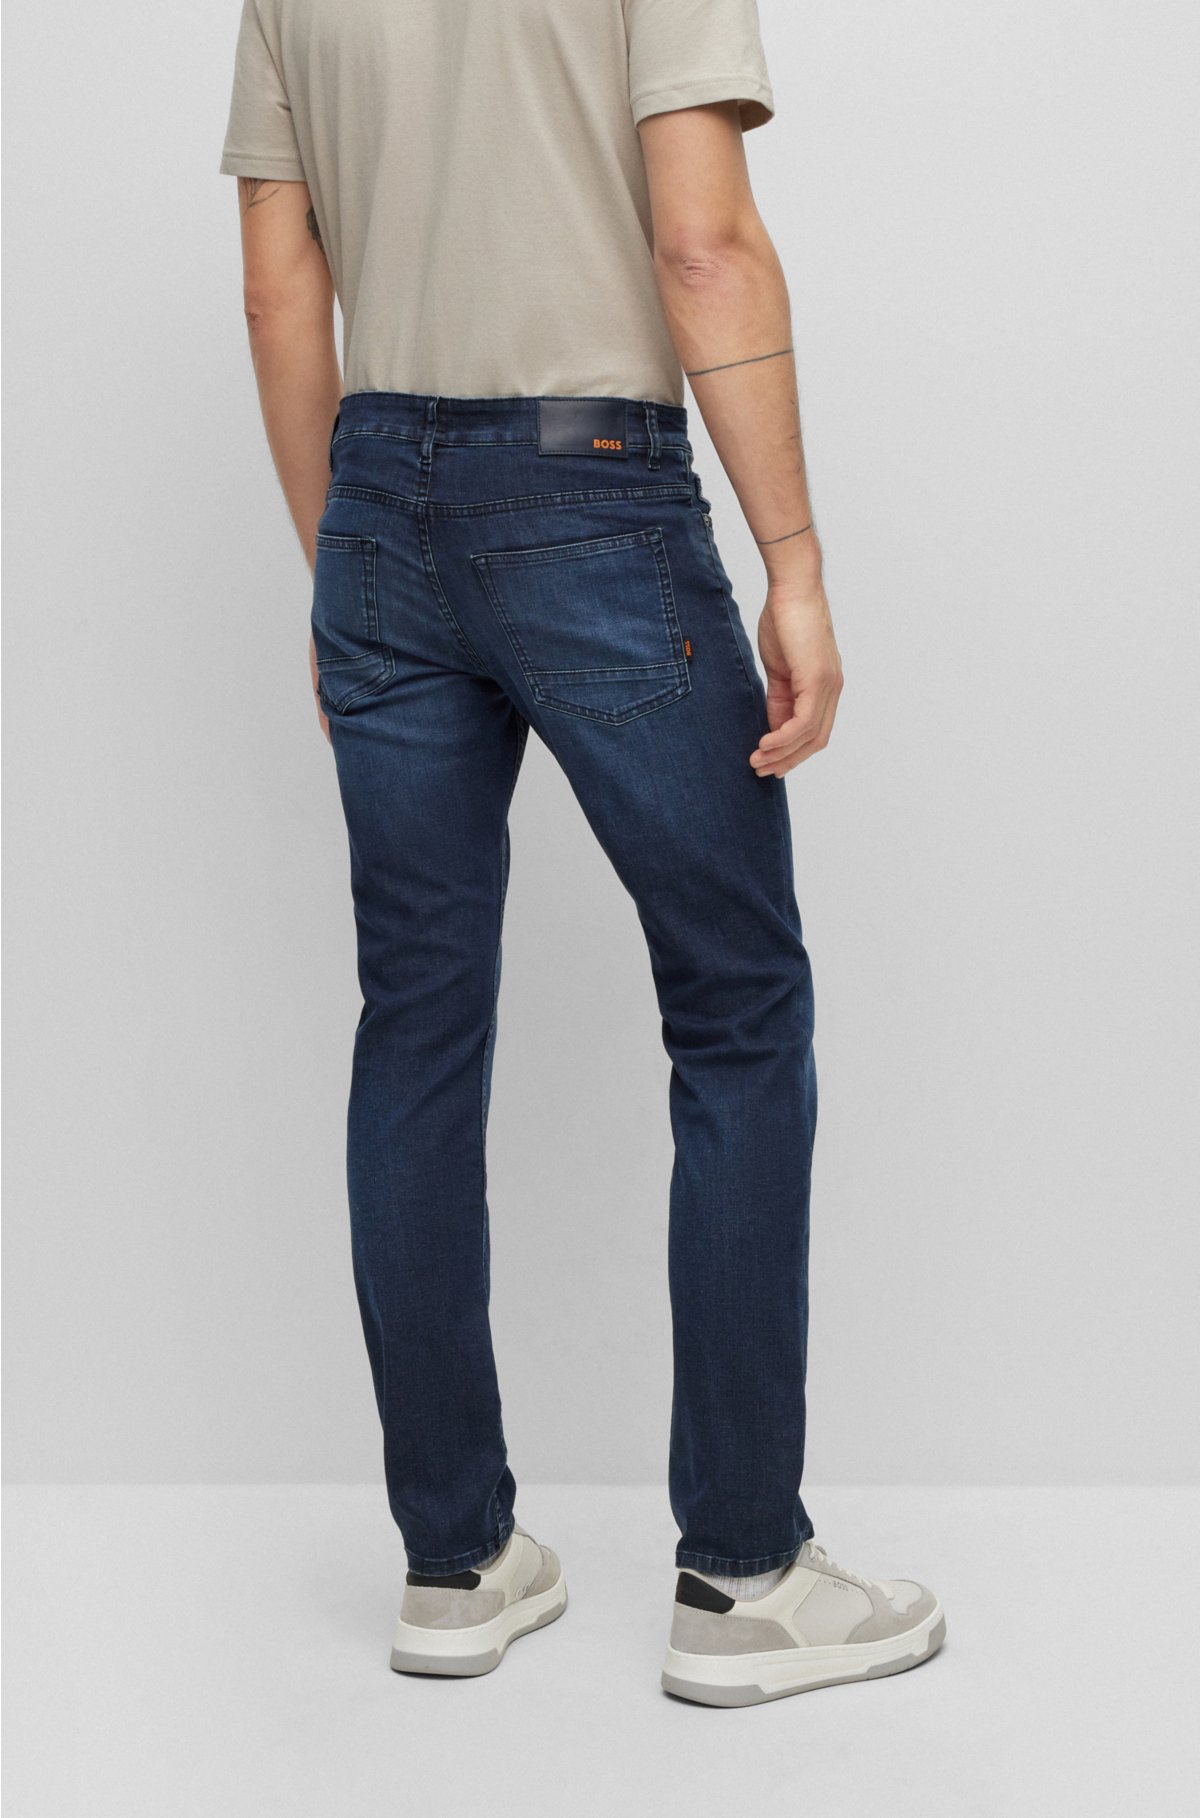 BOSS - Slim-fit in jeans super-stretch blue denim